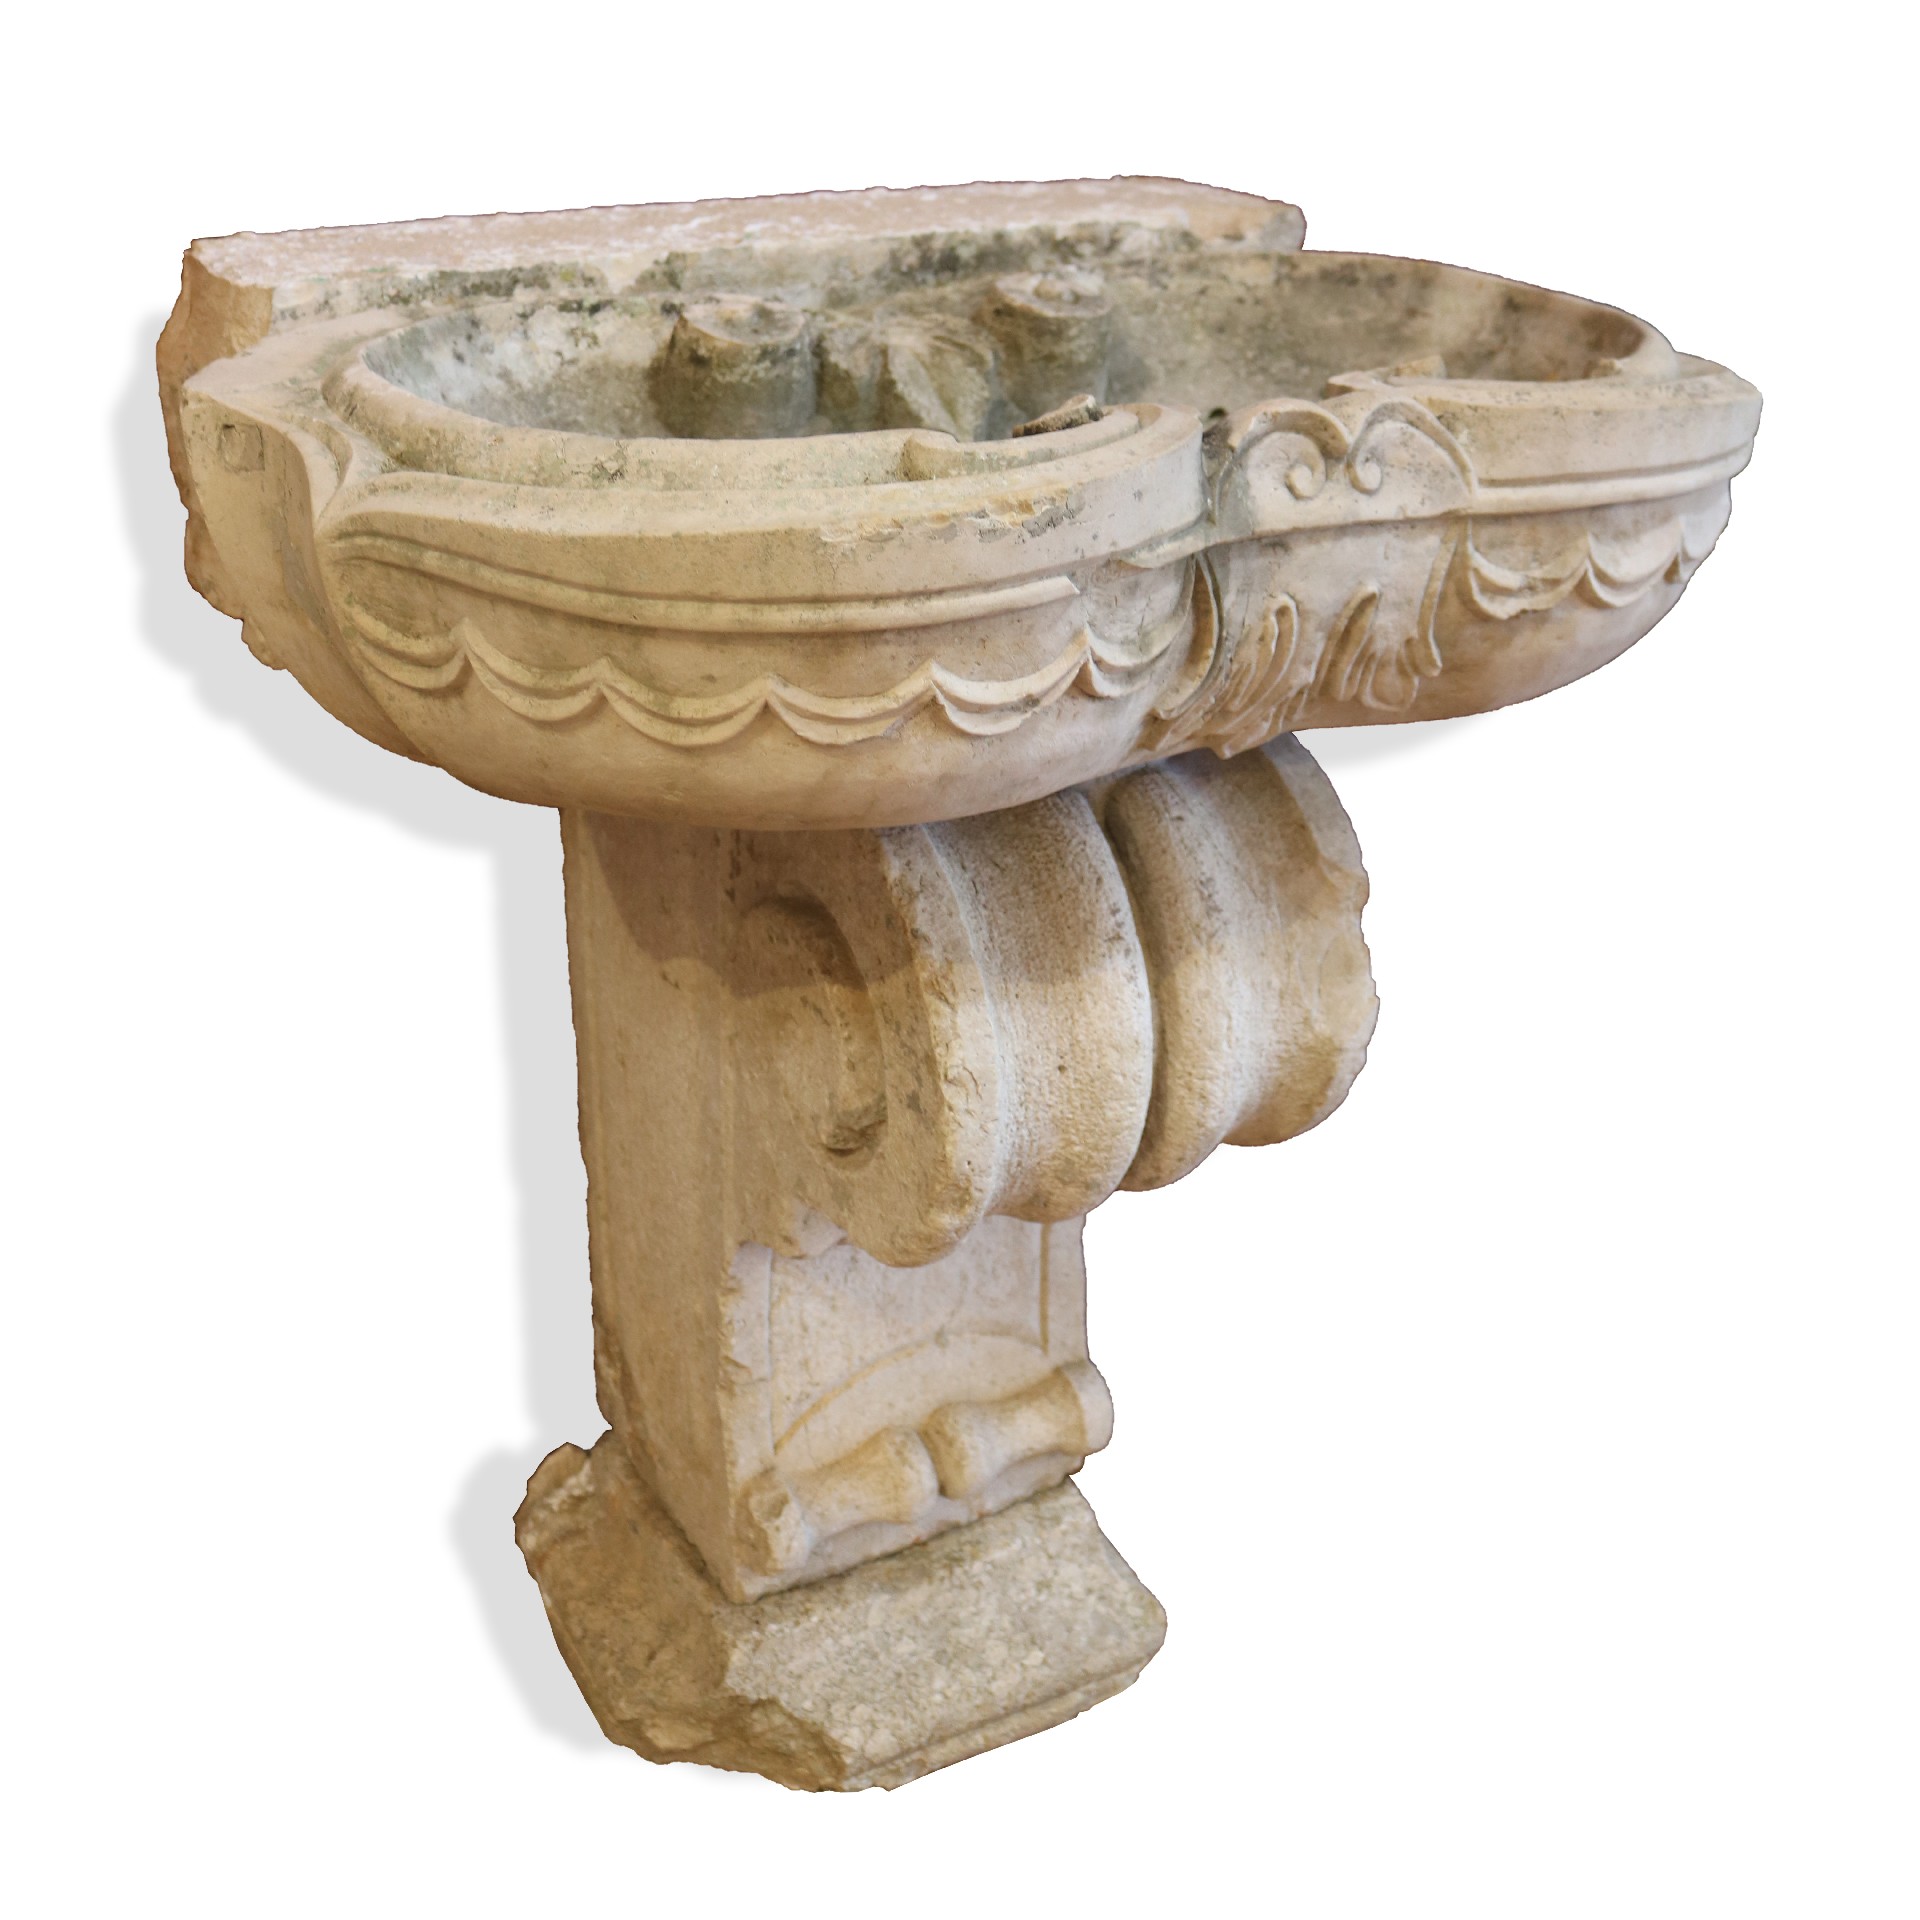 Fontana antica in pietra.  - Fontane Antiche - Arredo Giardino - Prodotti - Antichità Fiorillo